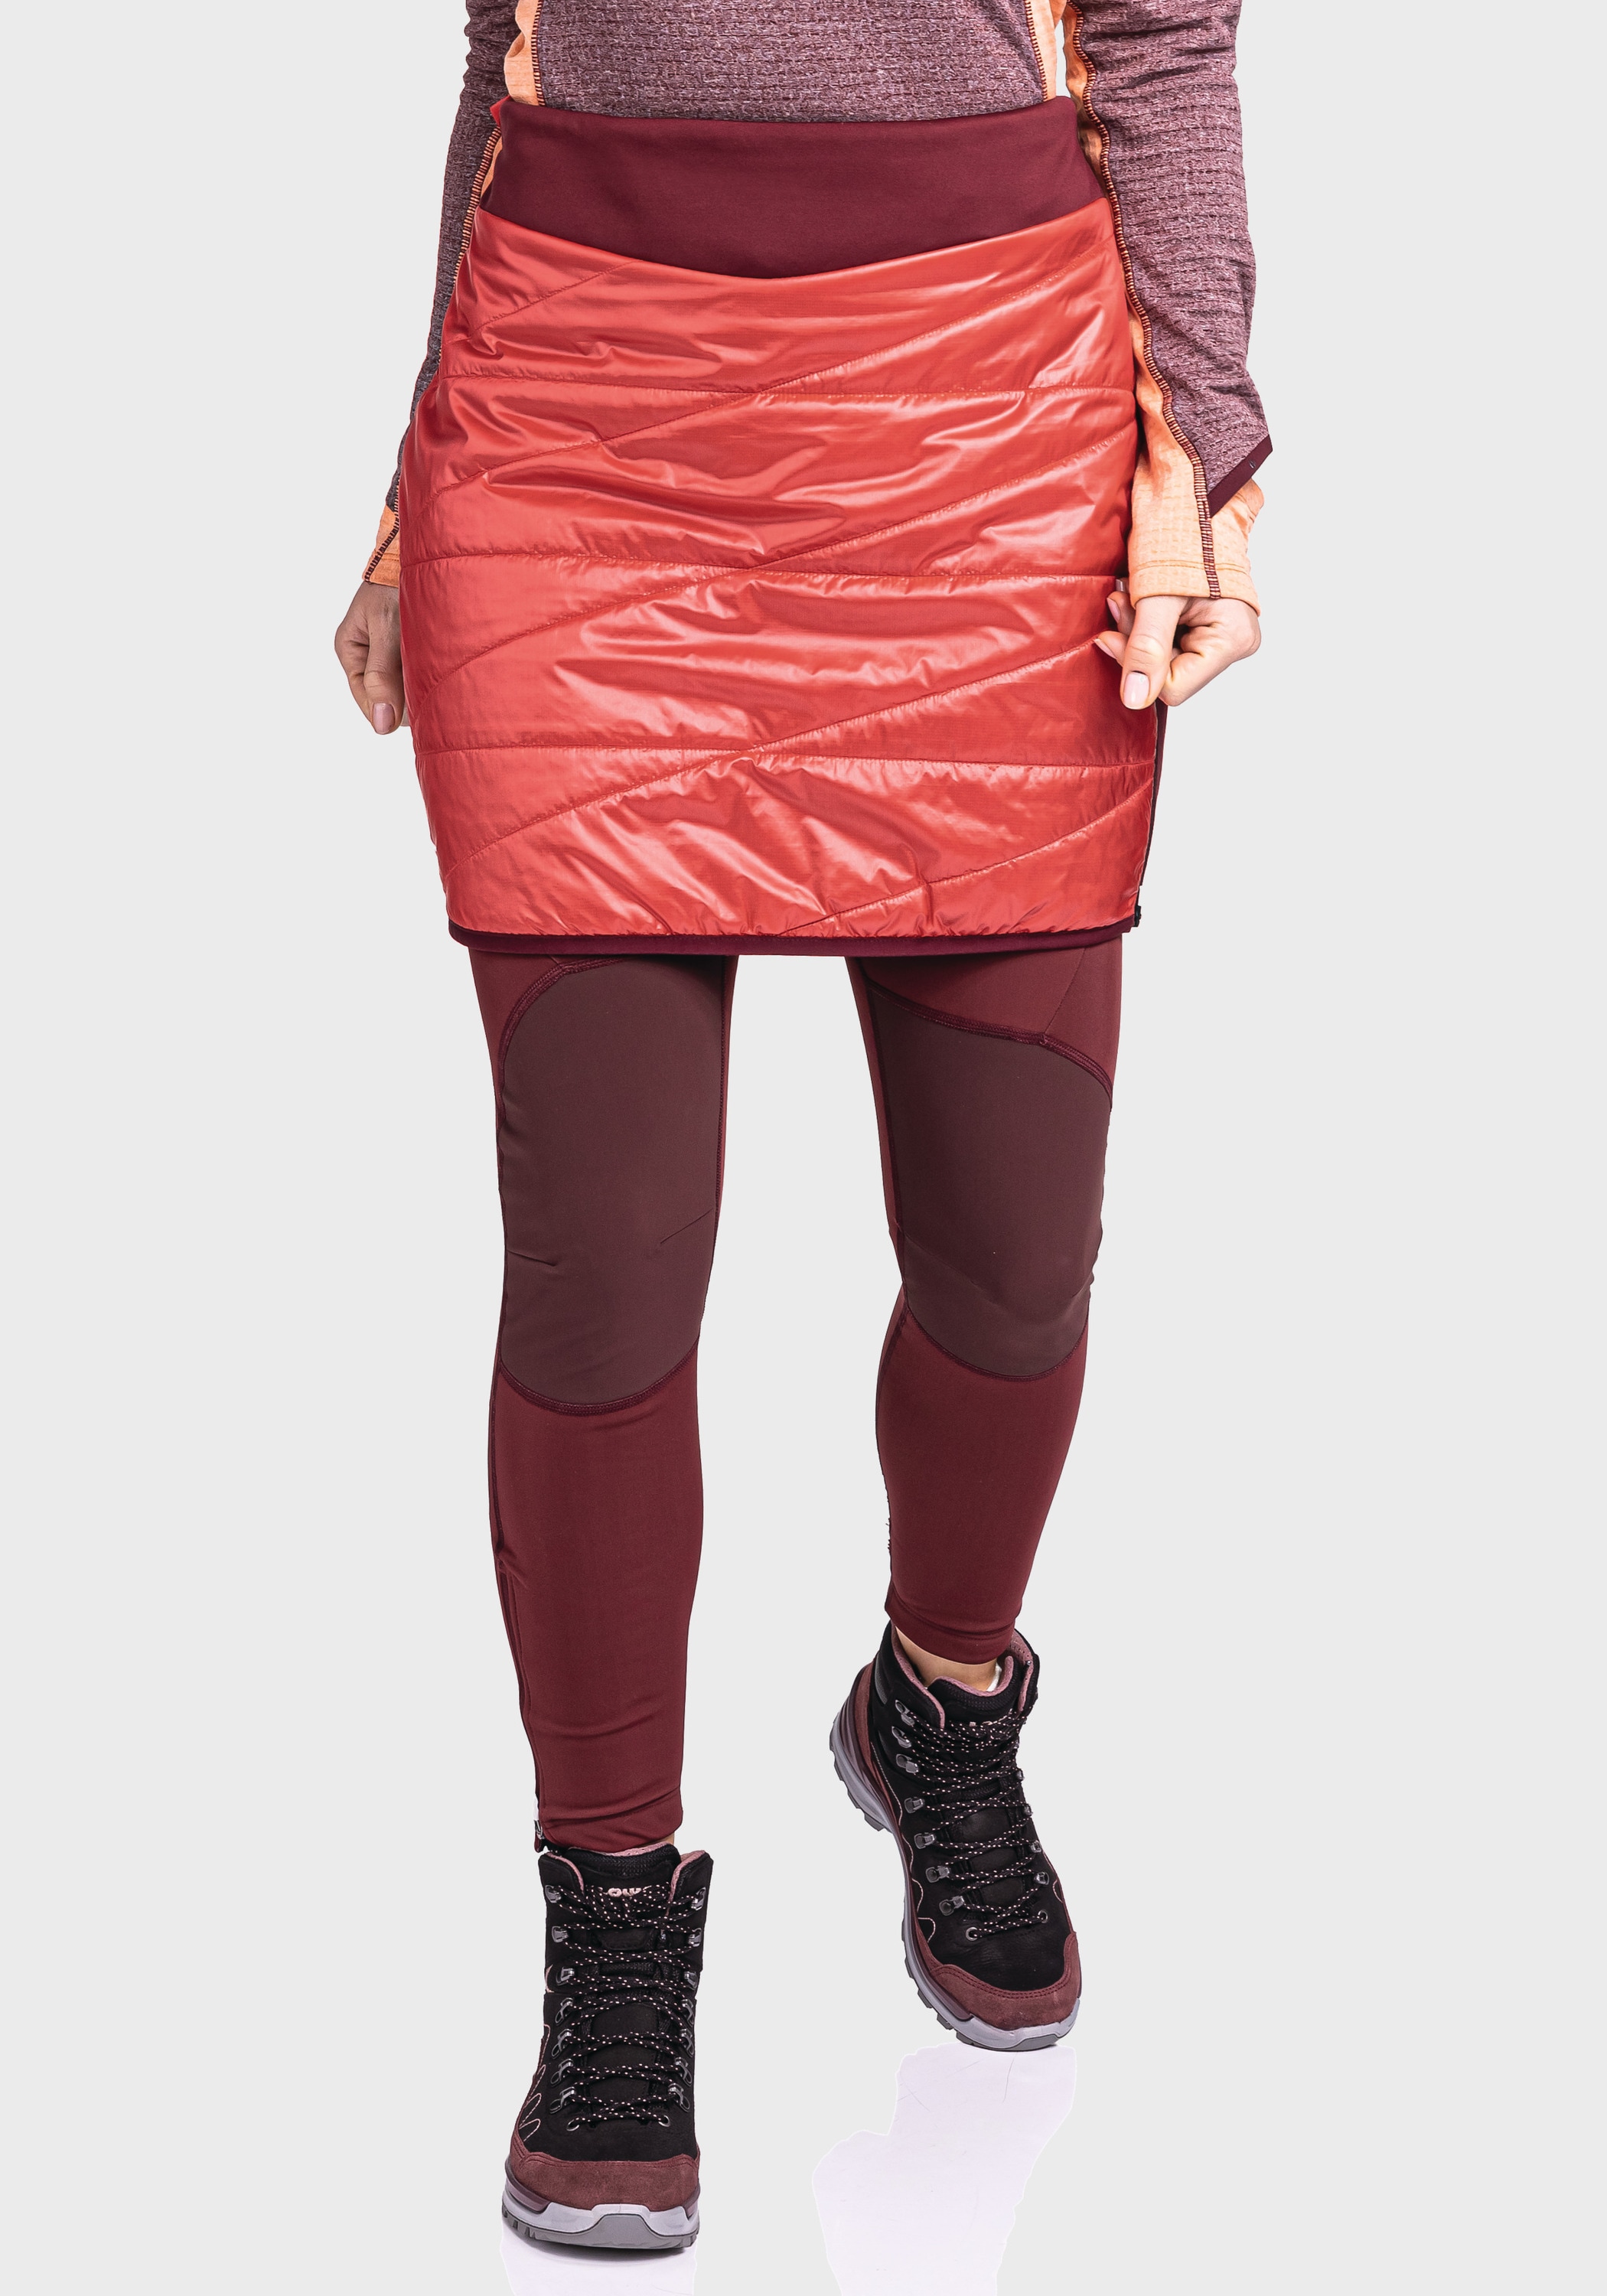 Schöffel Sweatrock L« Skirt Stams kaufen »Thermo OTTO bei